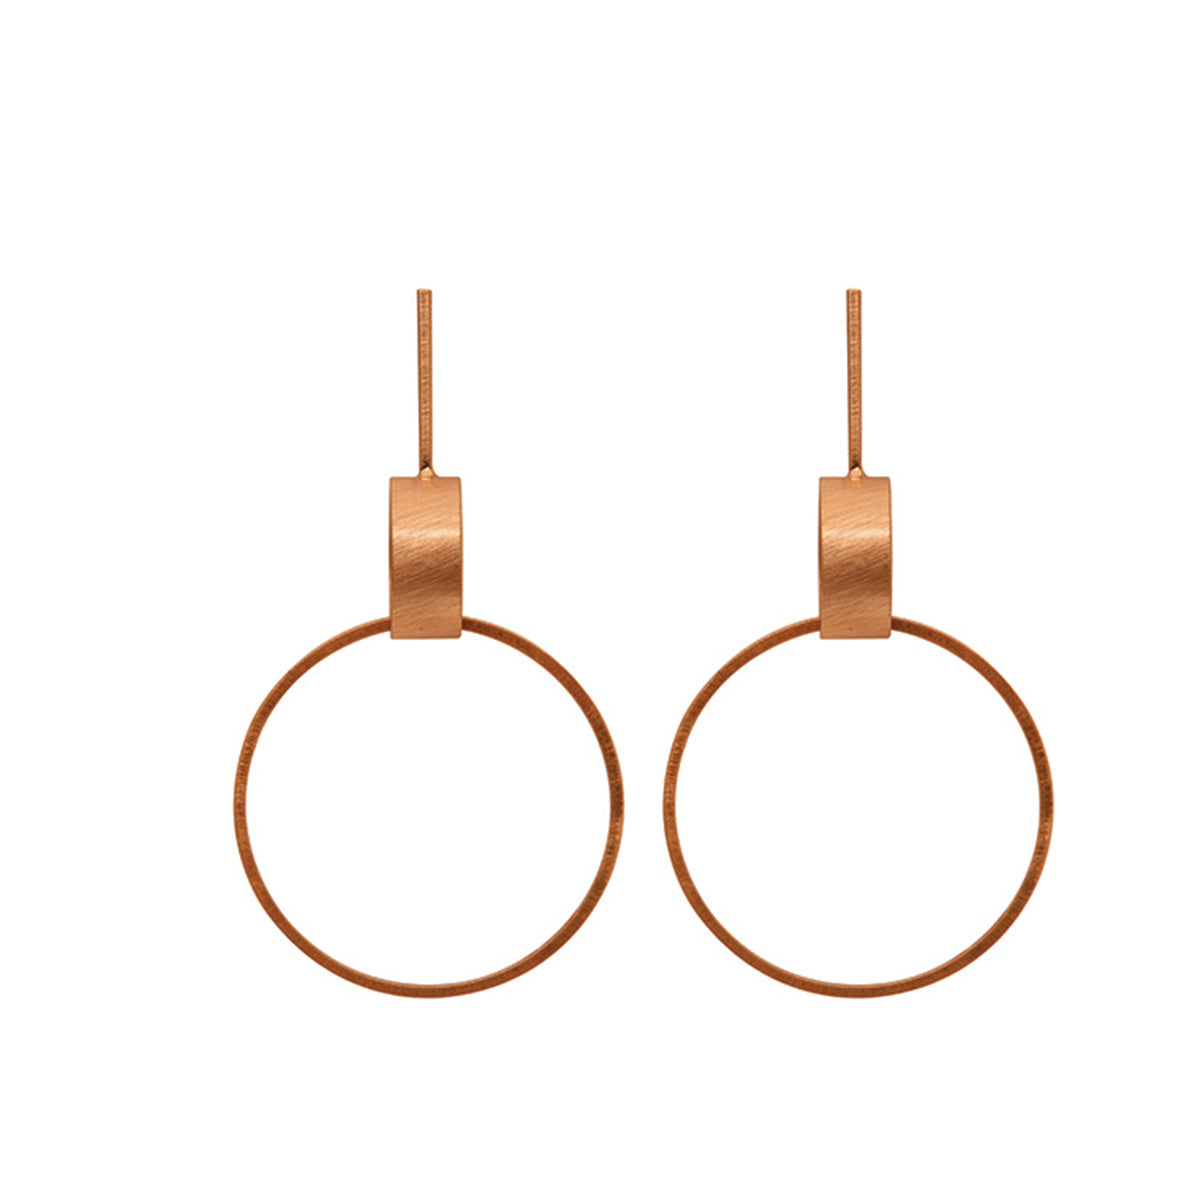 Dansk - Tamara rose gold 8x4.5cm drop hoop earrings with surgical steel posts